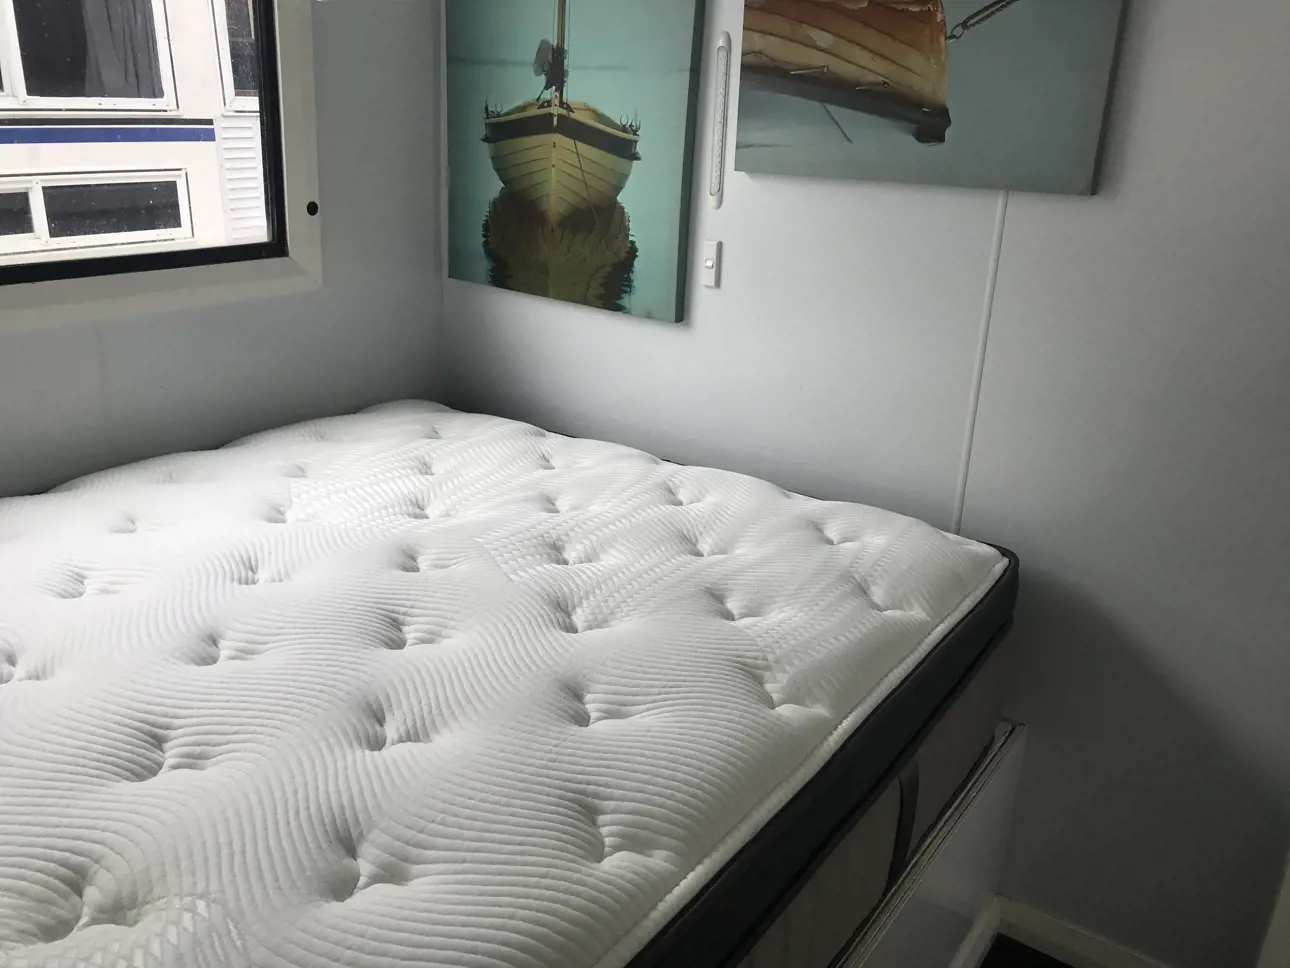 Super comfy mattresses in the bedrooms